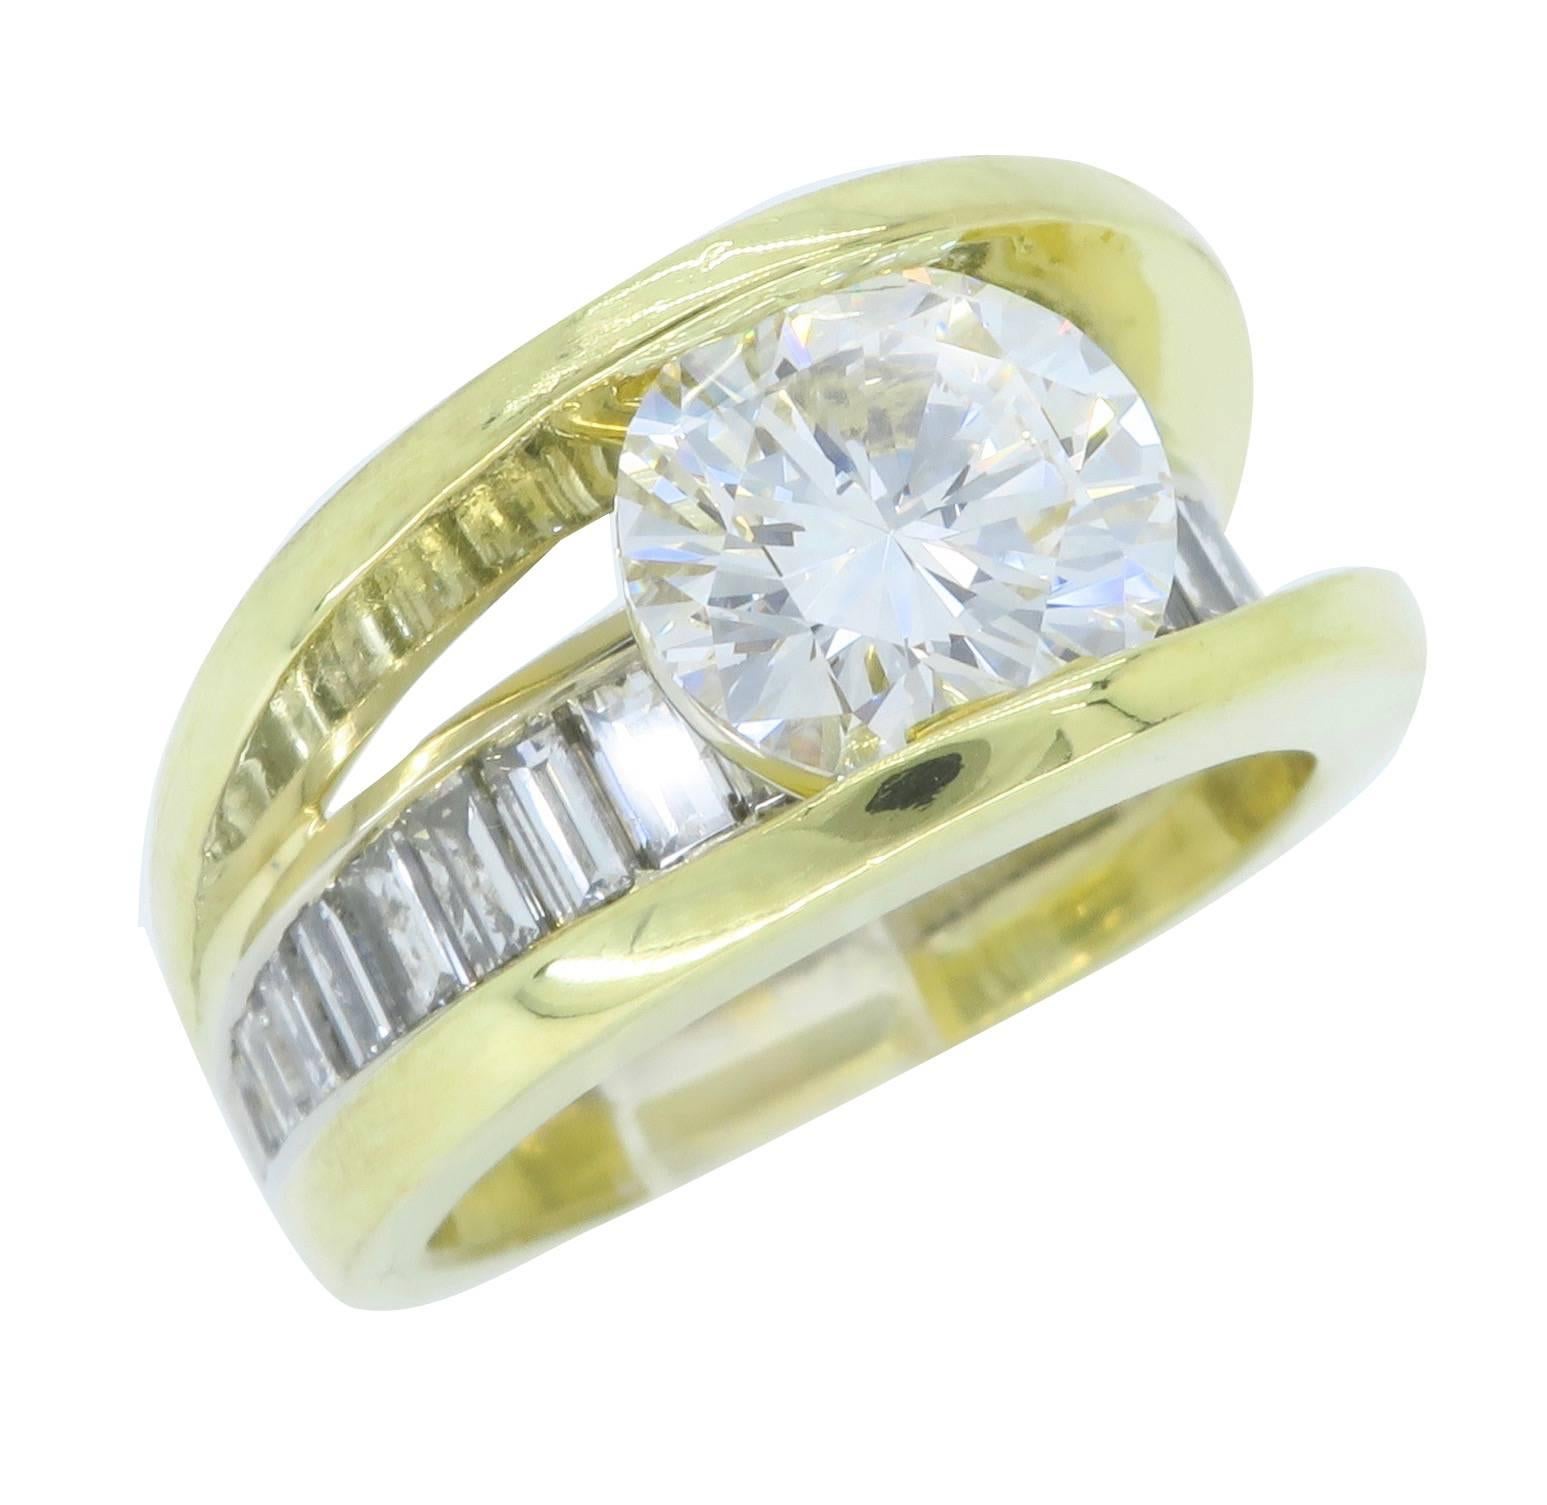 GIA Certified 3.22 Carat Diamond Engagement Ring in 18 Karat Gold 4